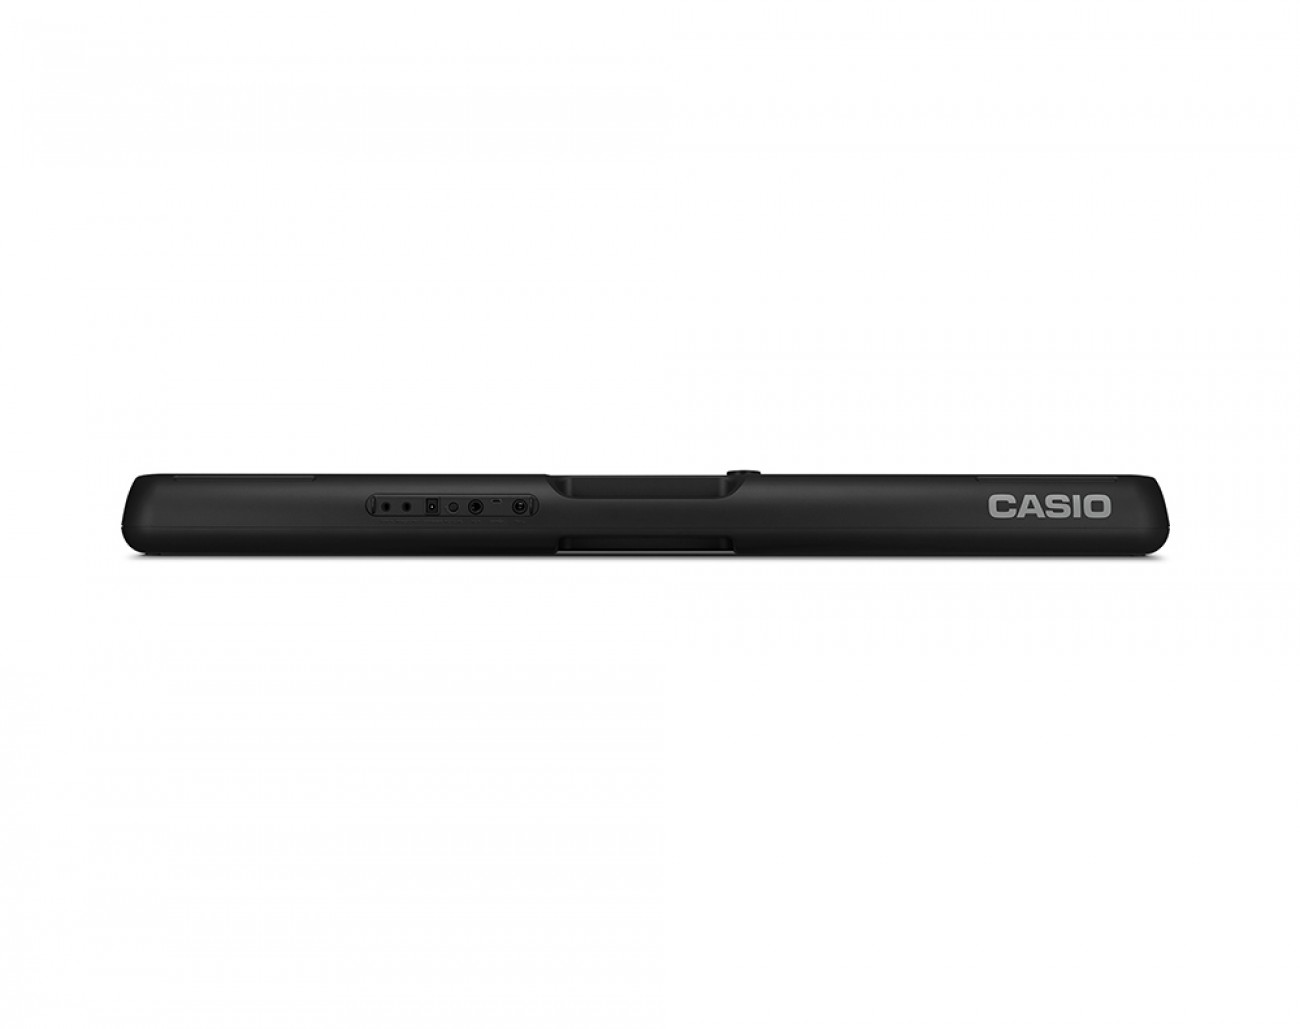 Casio LK-S250 Leuchtasten Keyboard inkl. Netzteil 